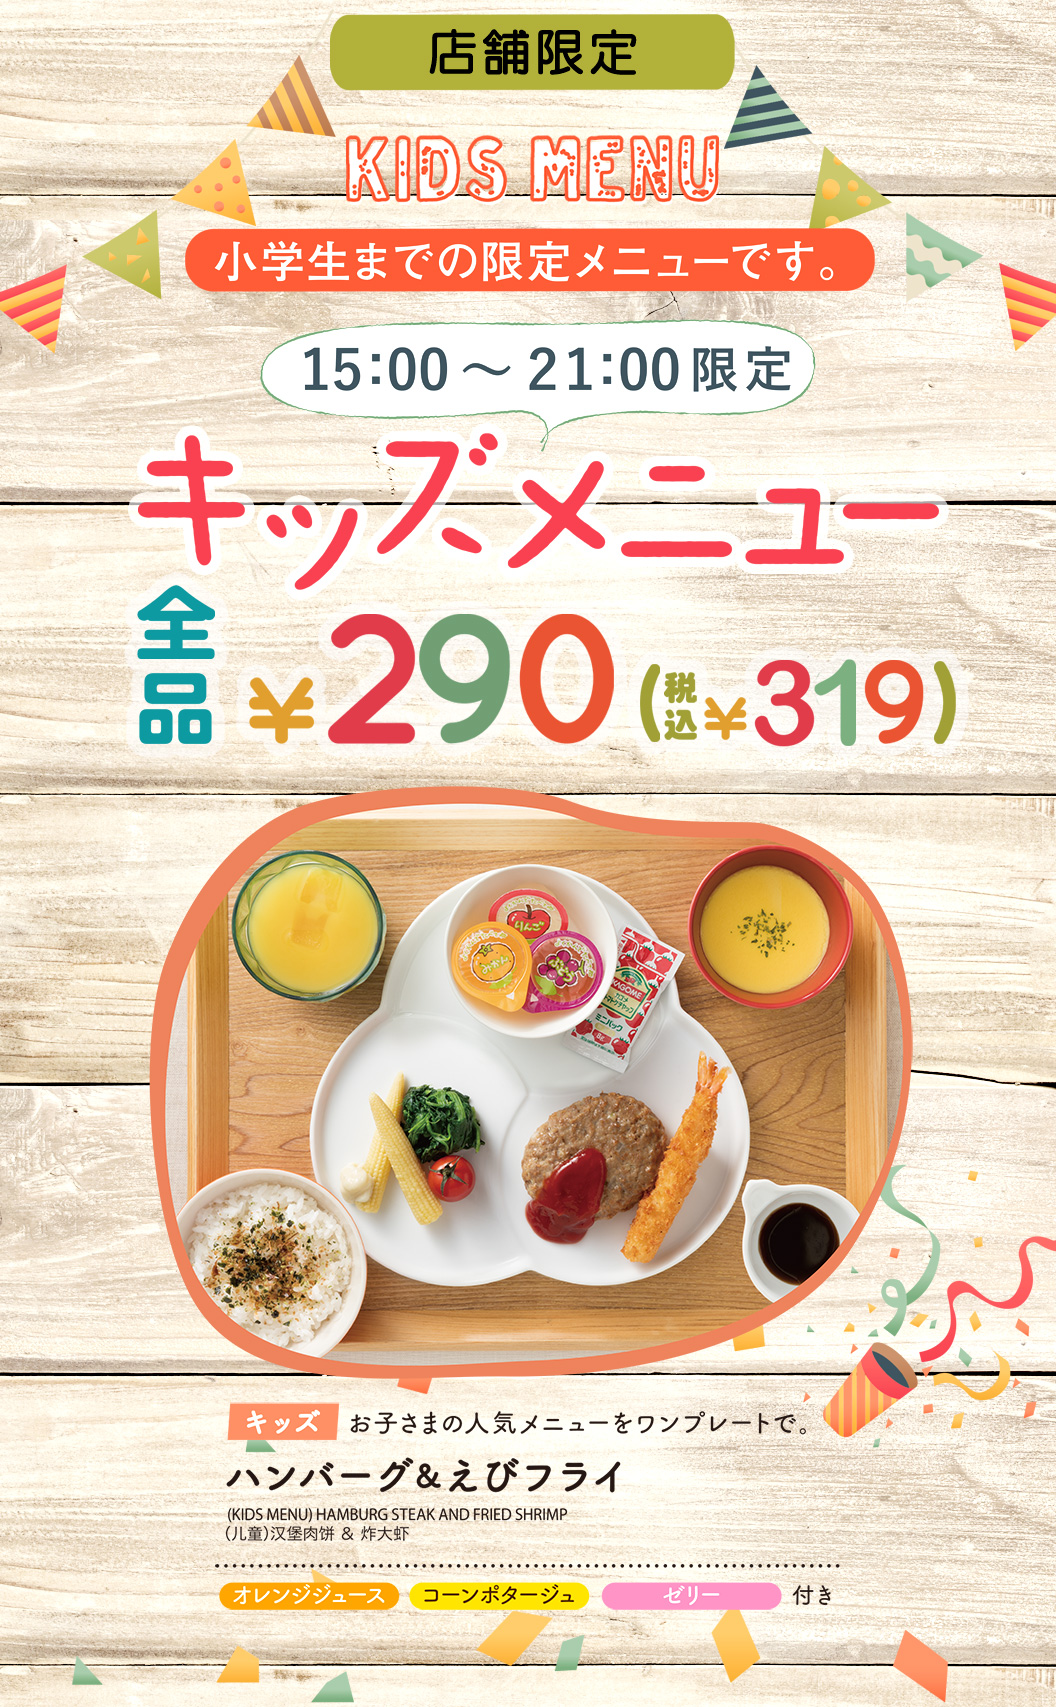 【店鋪限定】 兒童菜品全部290日元 (含稅319日元) 漢堡肉餅&炸蝦的人氣菜品一盤加橙汁、玉米濃湯、果凍